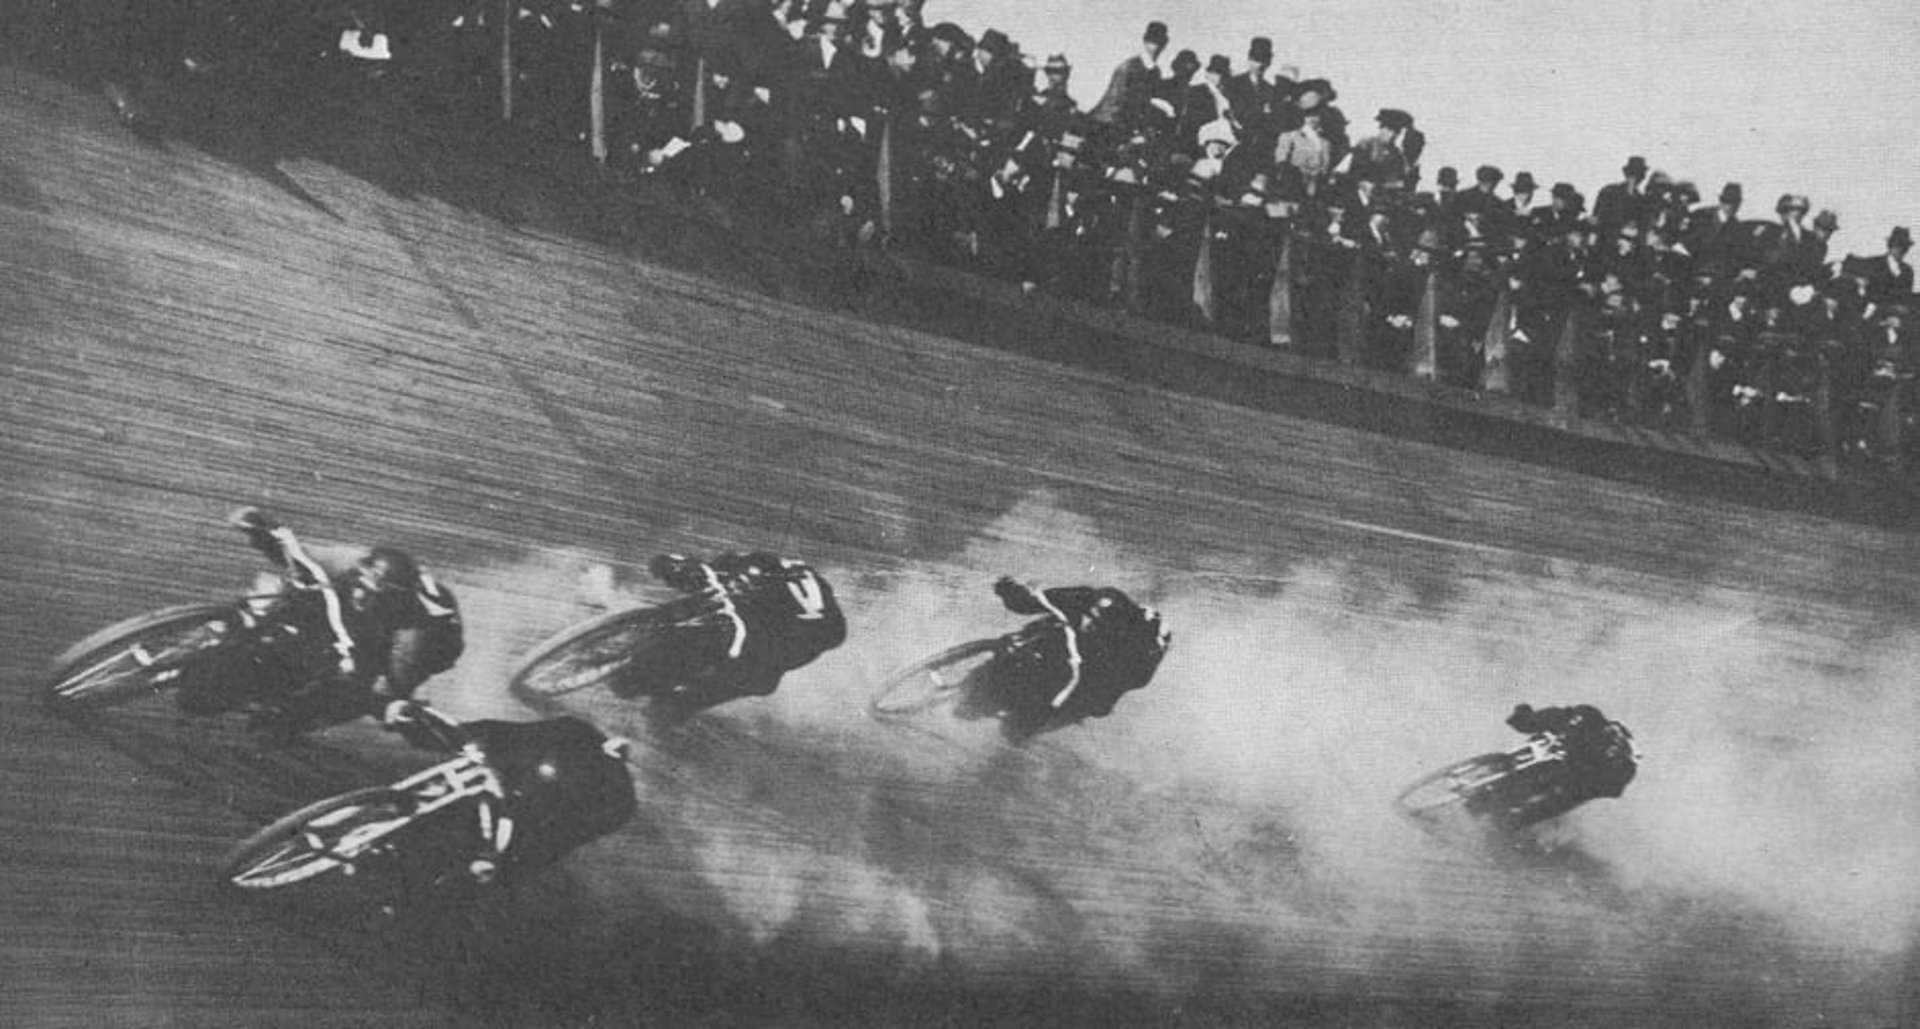 Board track racing - Wikipedia